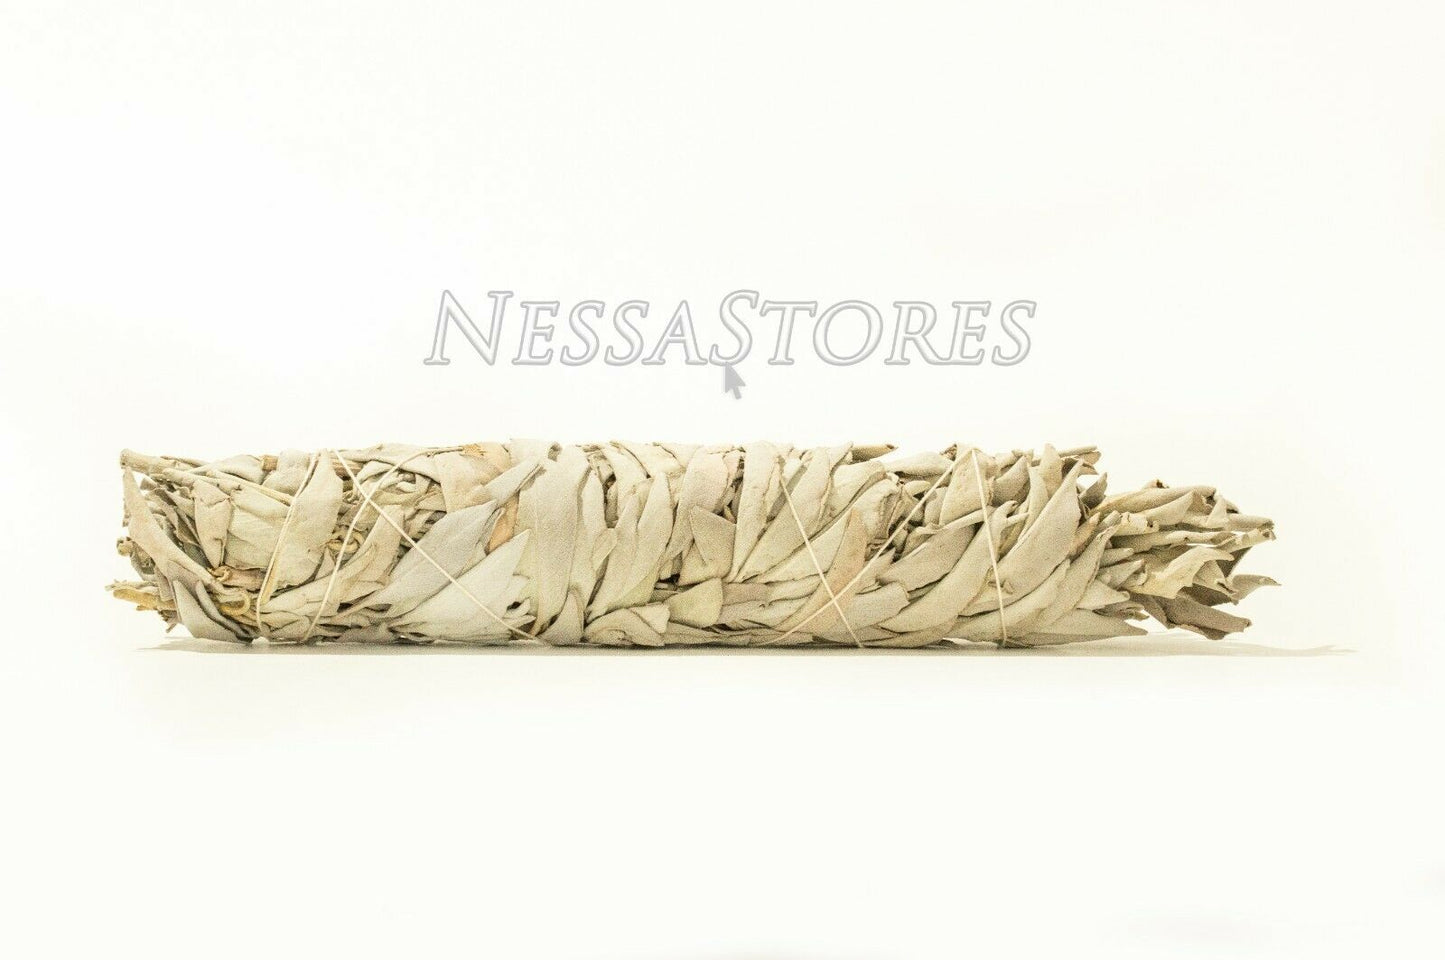 NessaStores California White Sage Smudge Incense 8"-9" Bundle (2 pcs) #JC-010